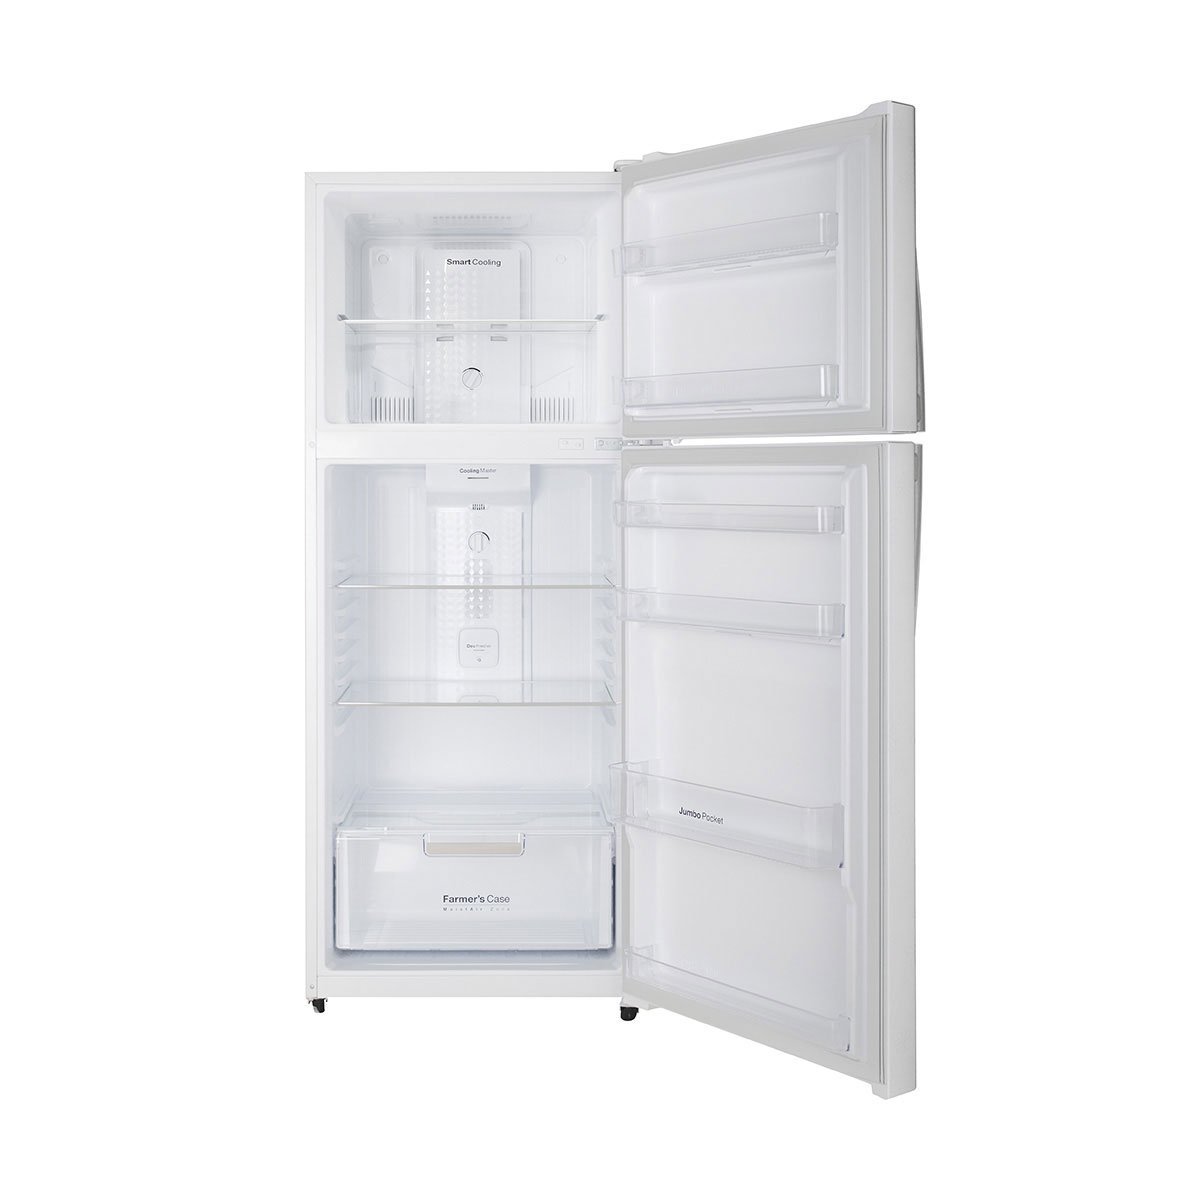 Refrigerador Daewoo Top Mount 16 Pies Blanco con Grabado Floral